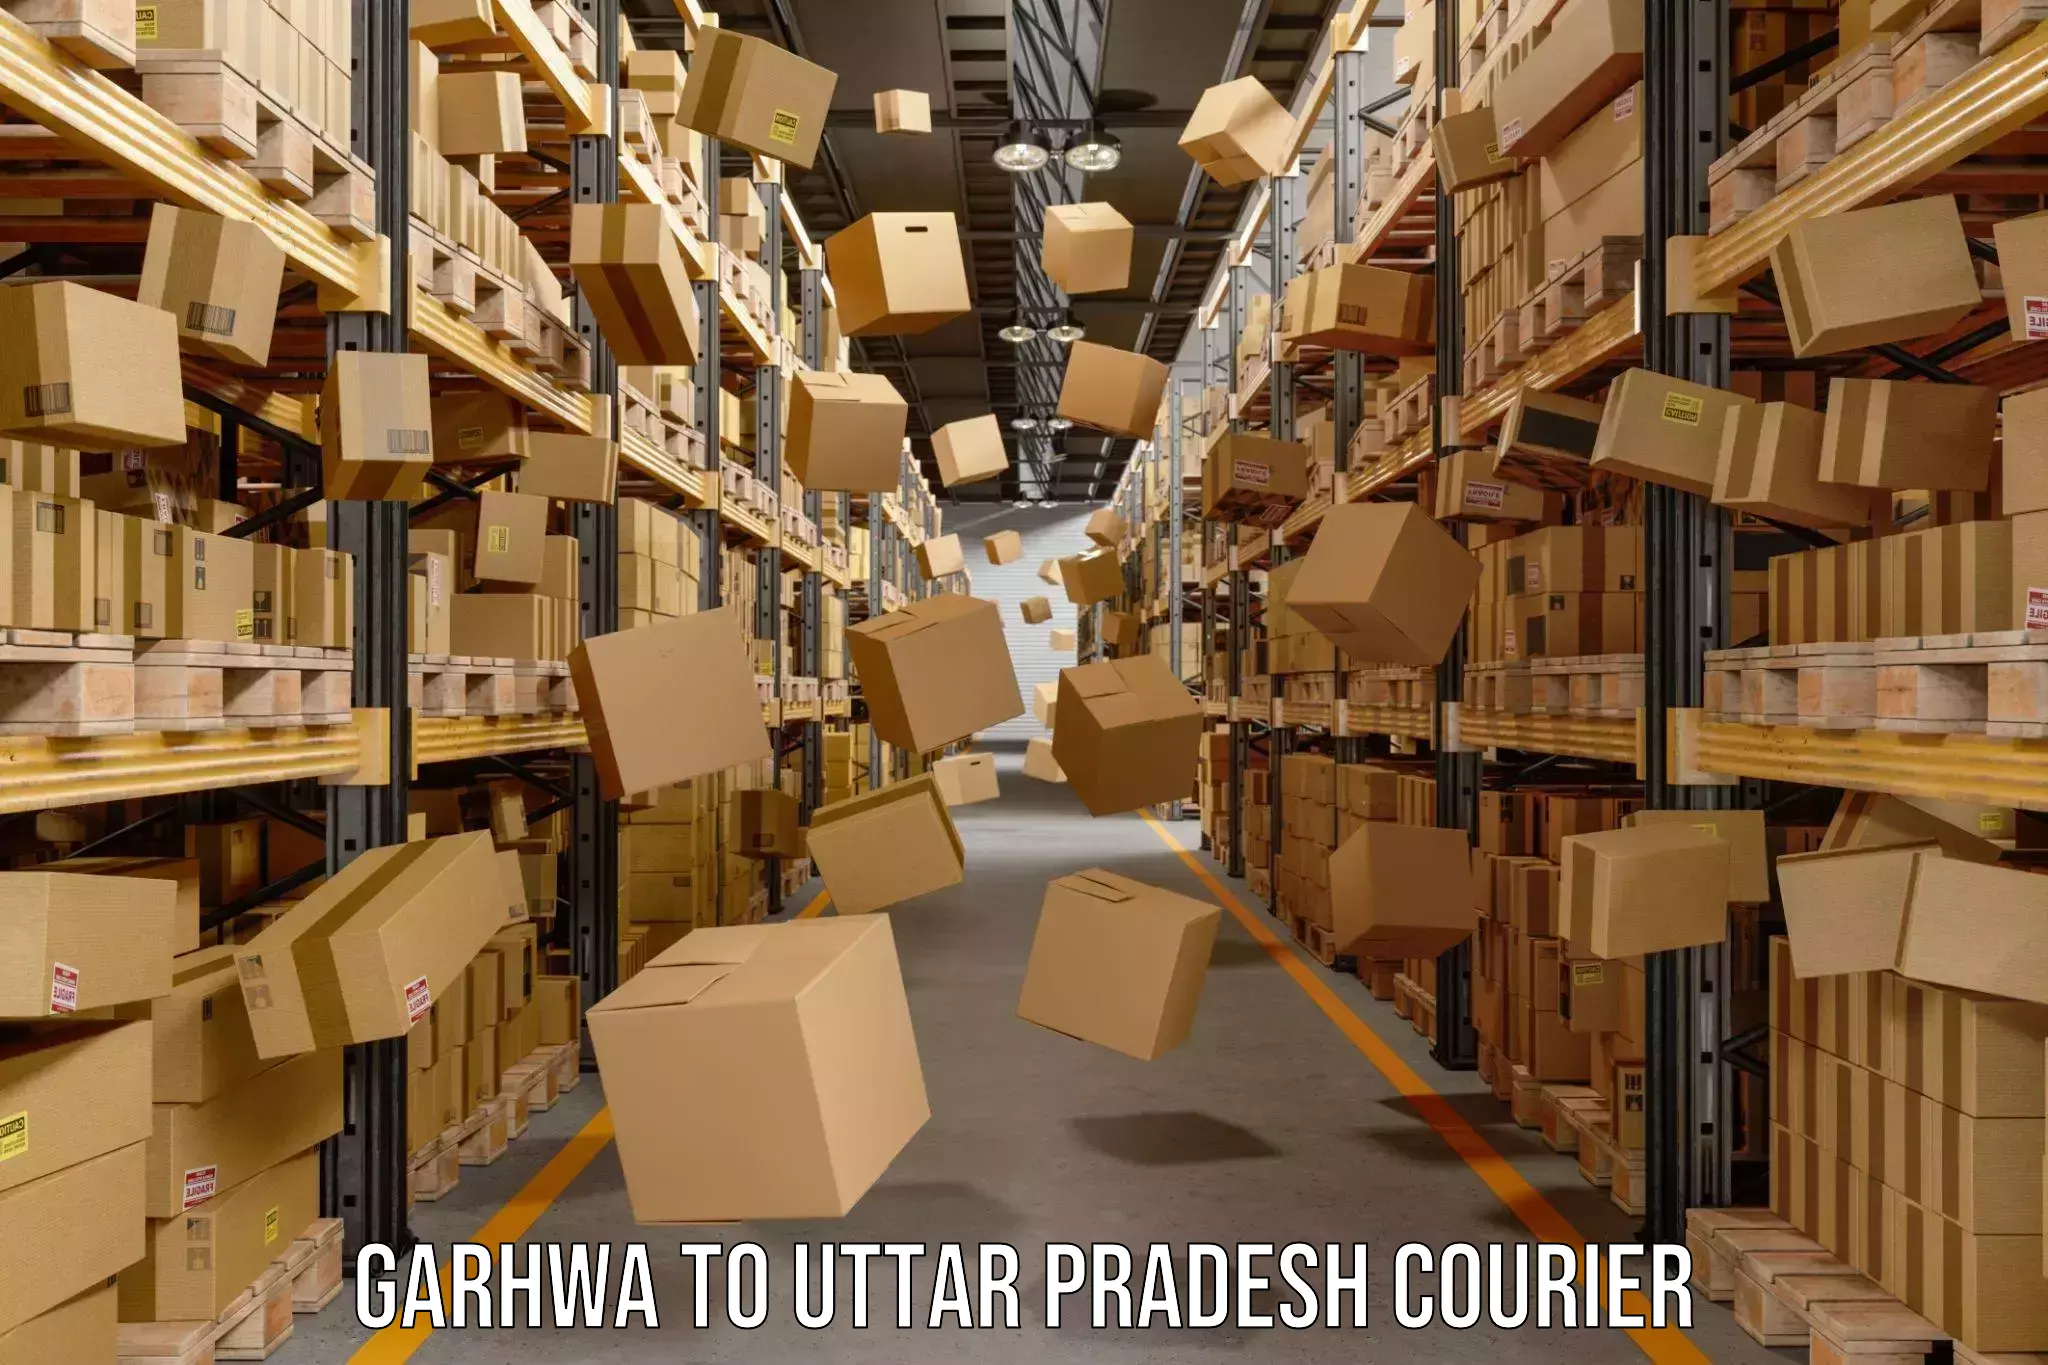 Cargo delivery service Garhwa to Hathras